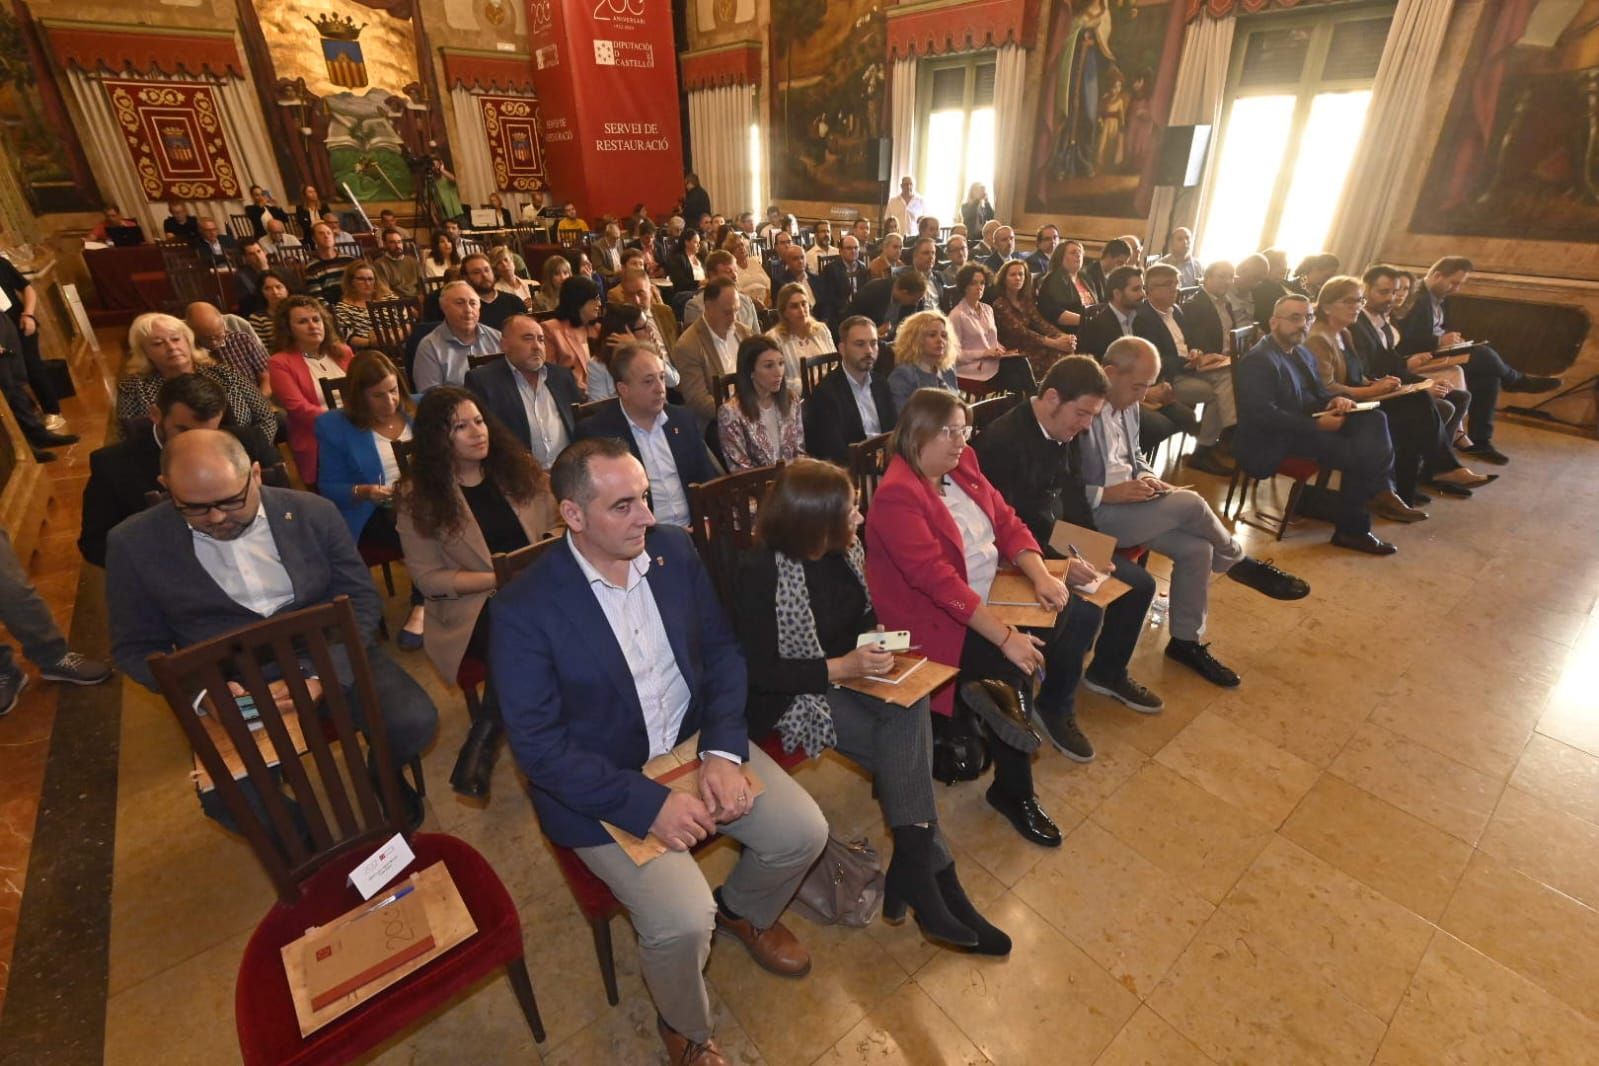 José Martí preside la V Cumbre de Alcaldesas y Alcaldes de la Provincia de Castellón